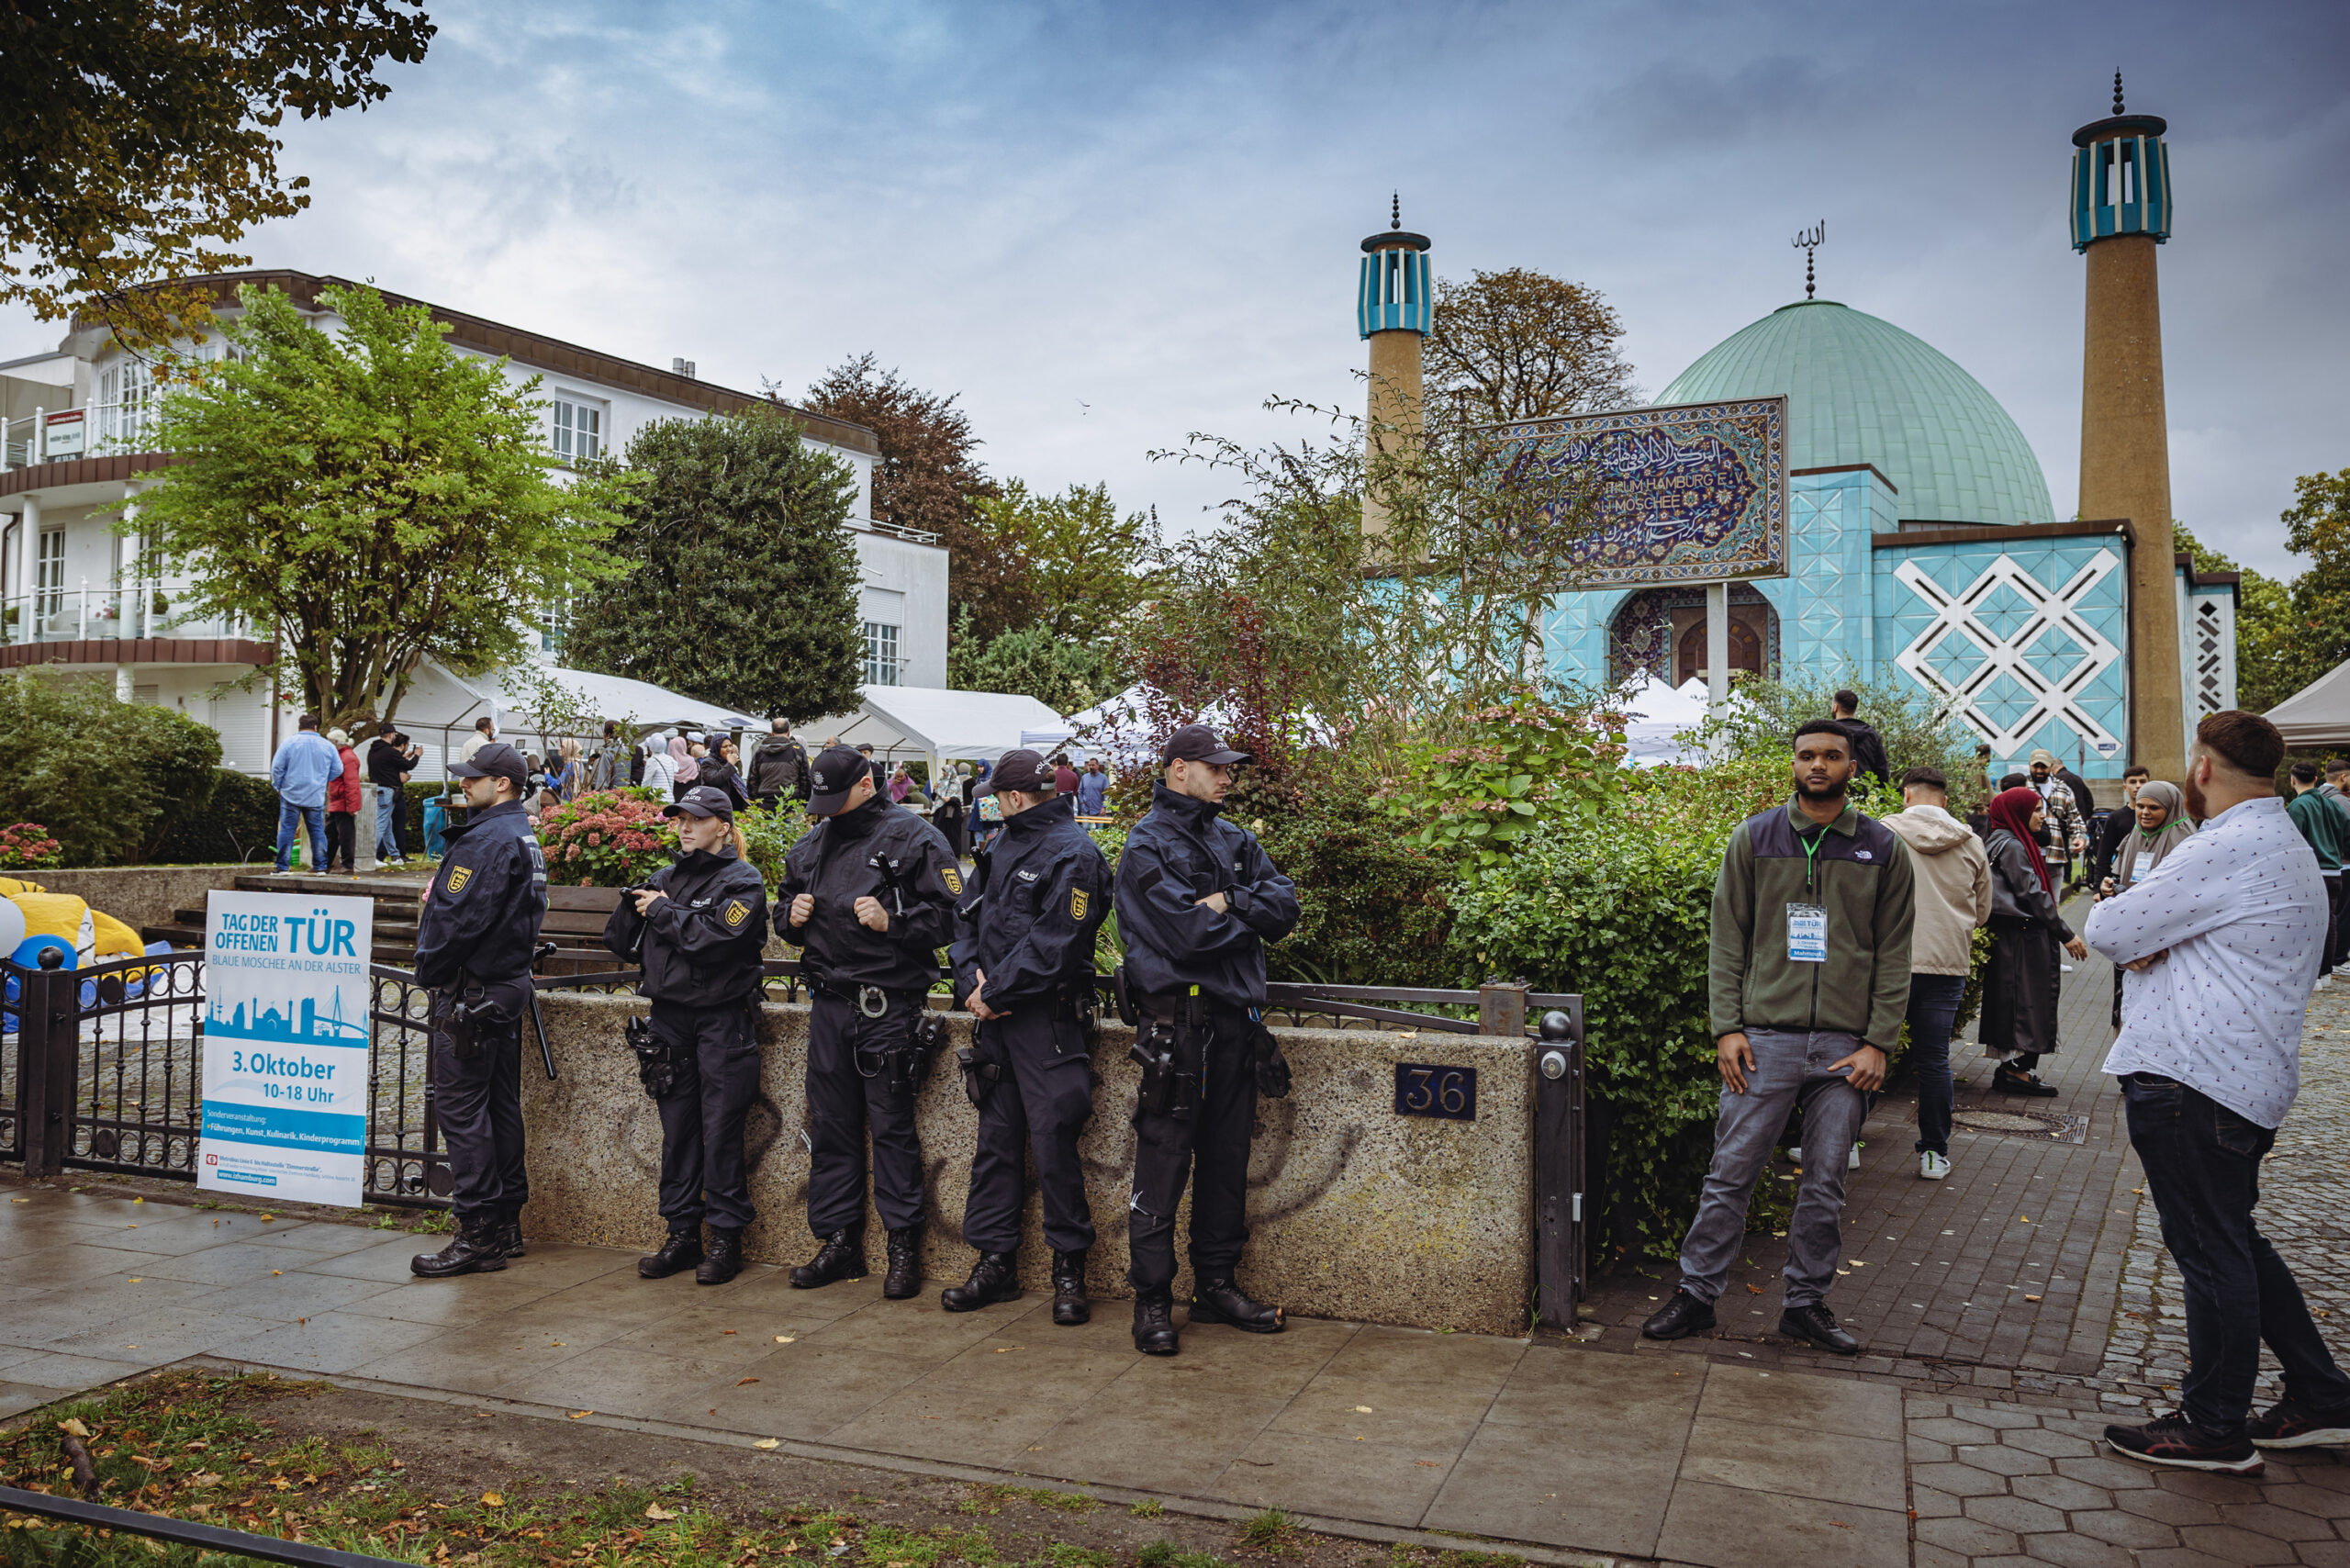 In den vergangenen Jahren gab es Handgreiflichkeiten, weshalb die Moschee von der Polizei bewacht wird.